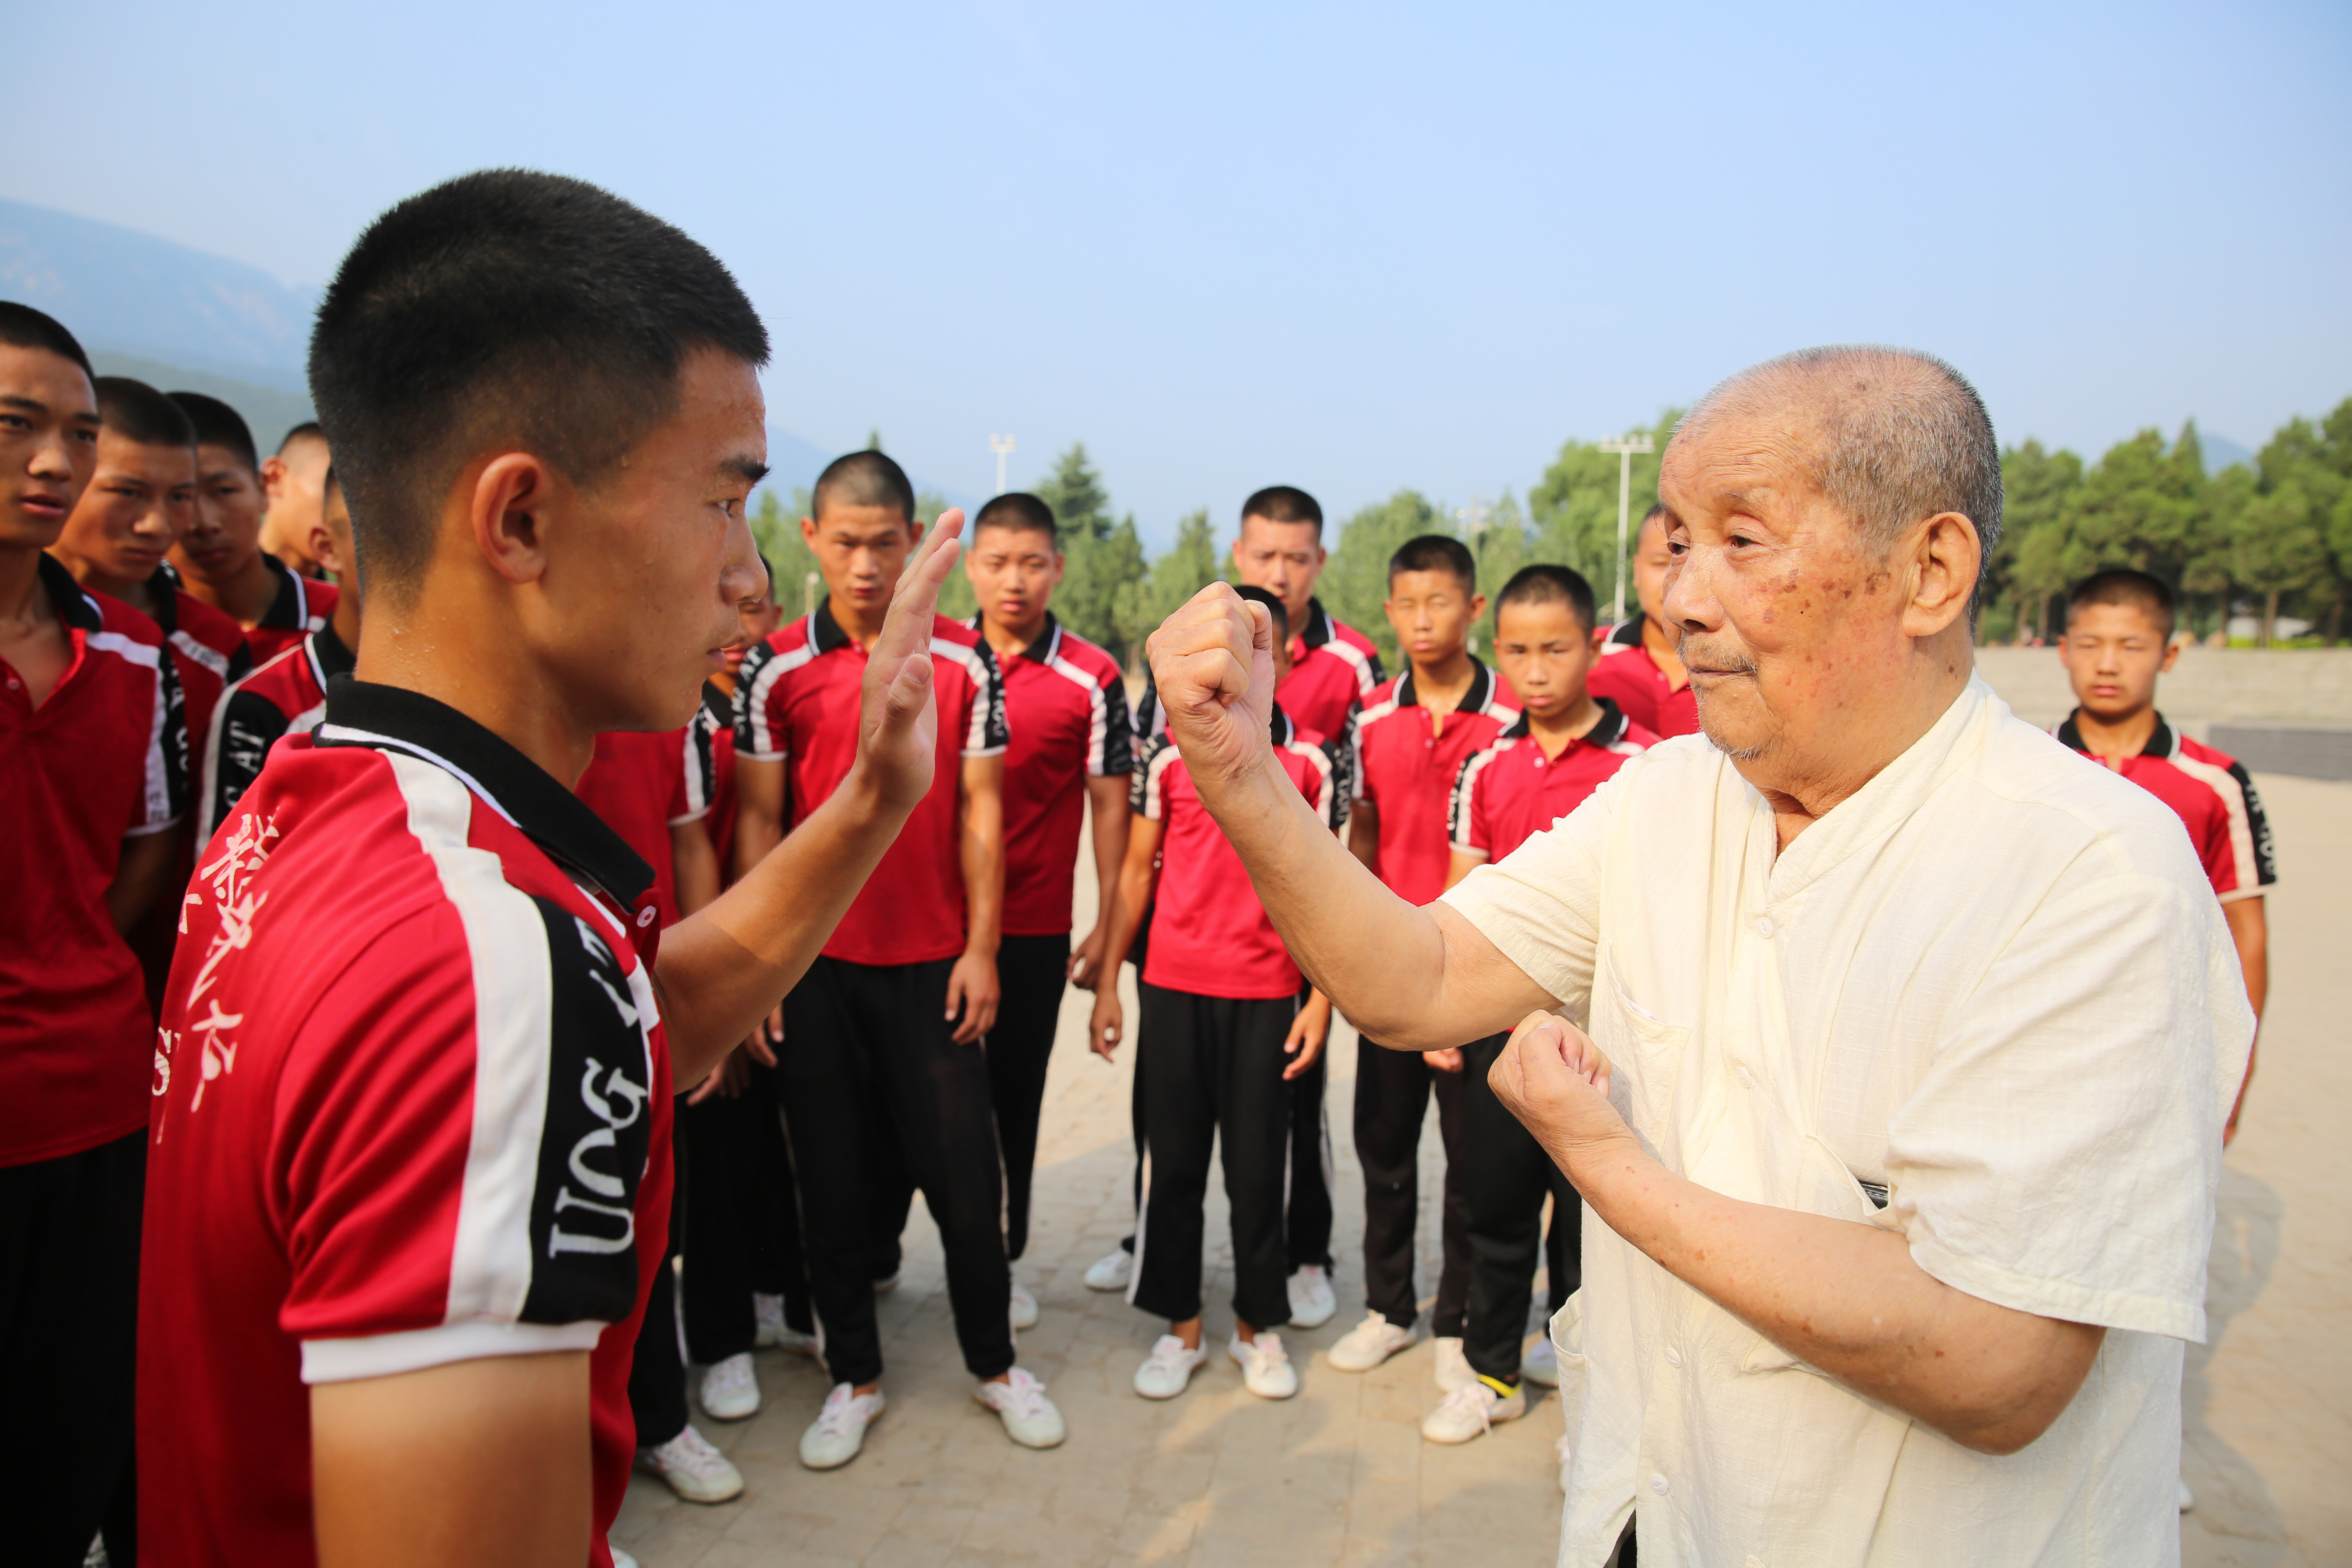 少林塔沟教育集团由出身于武术世家的全国著名拳师,中国民间文化杰出